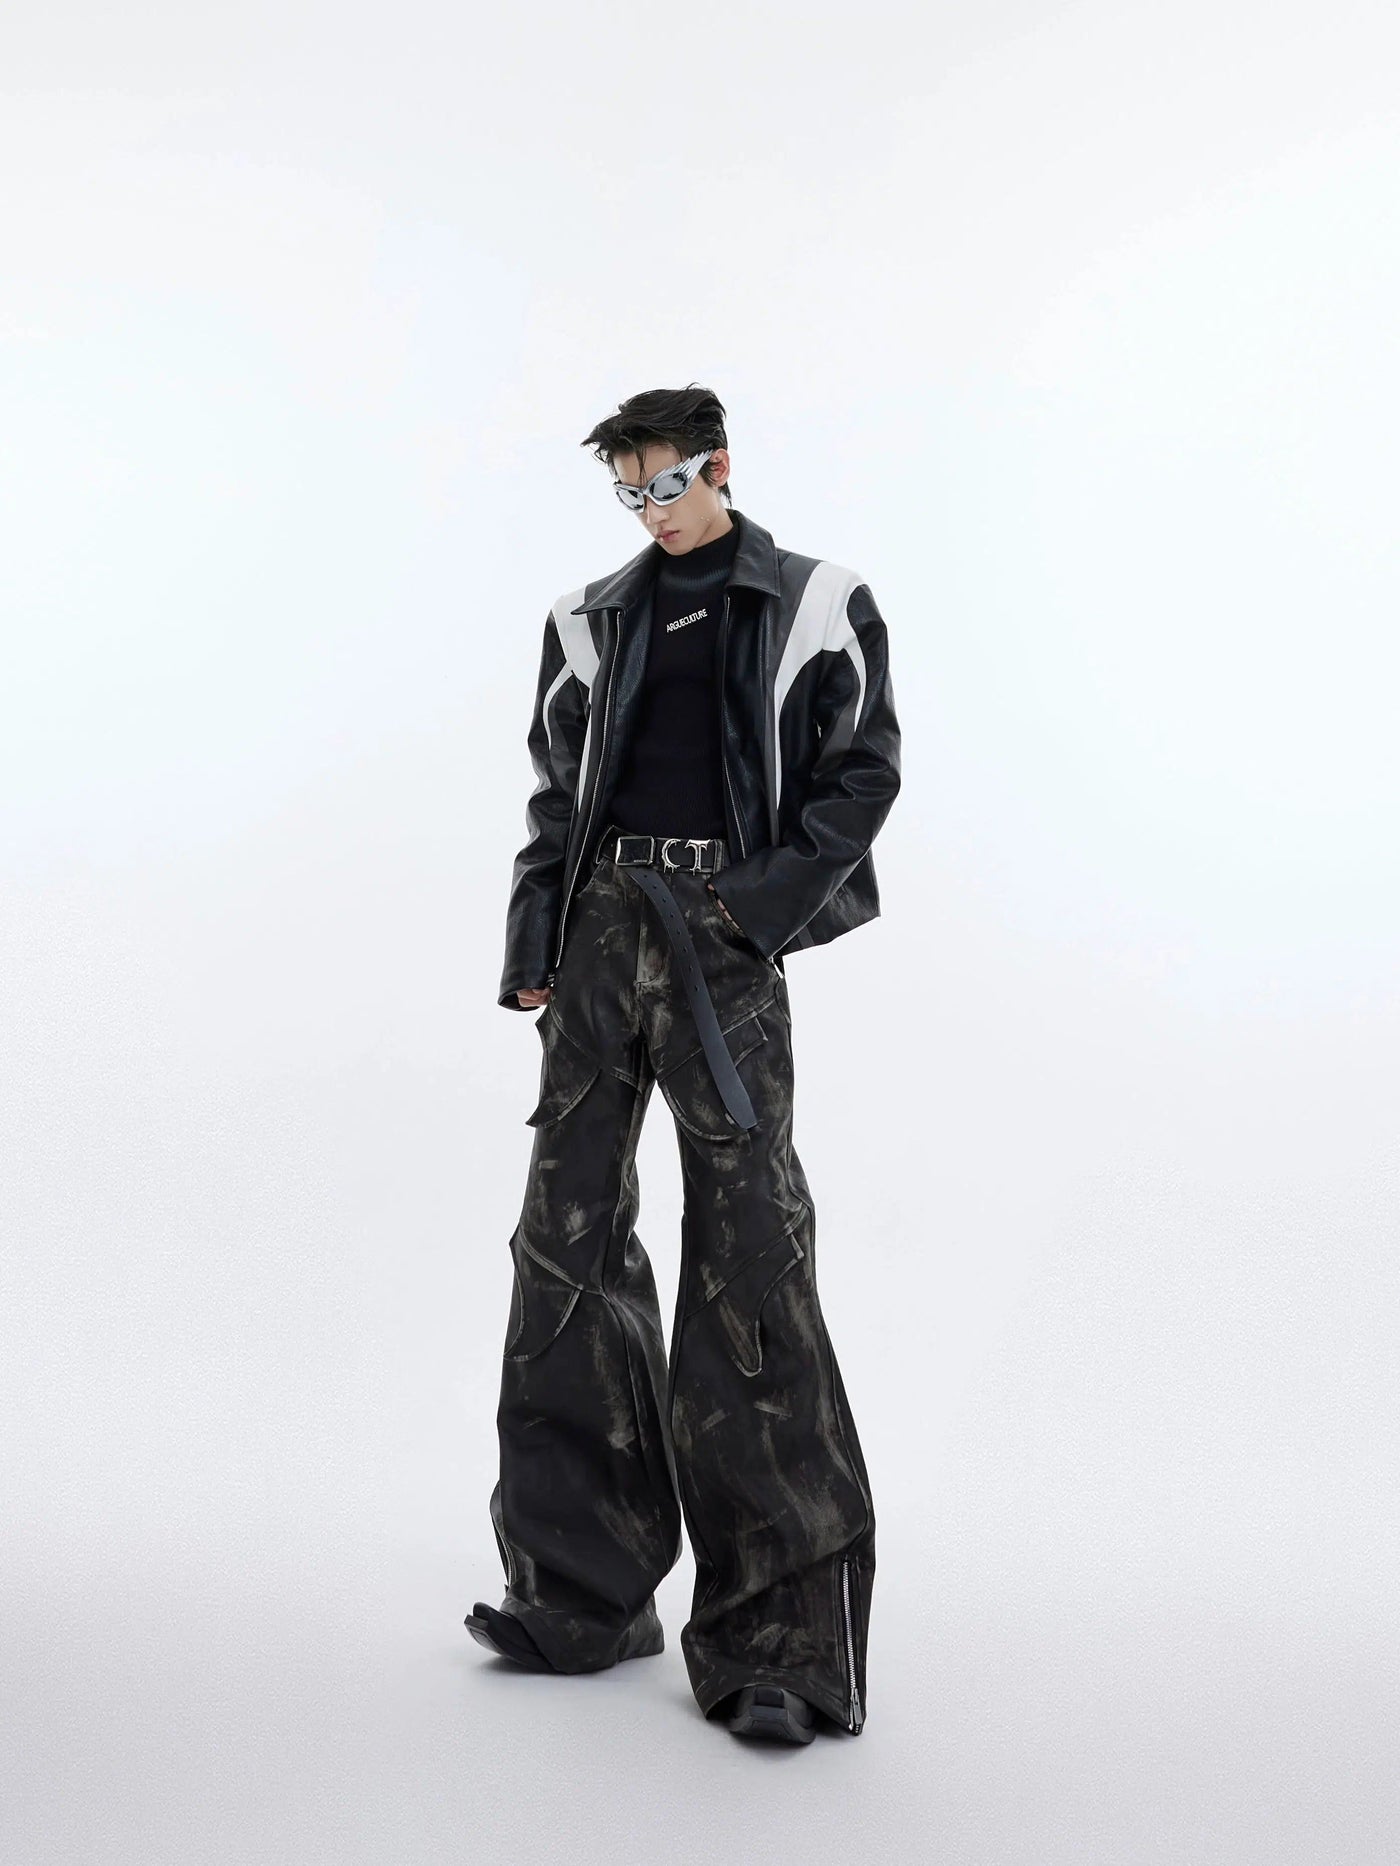 Smudges Detail Wide Leather Pants Korean Street Fashion Pants By Argue Culture Shop Online at OH Vault